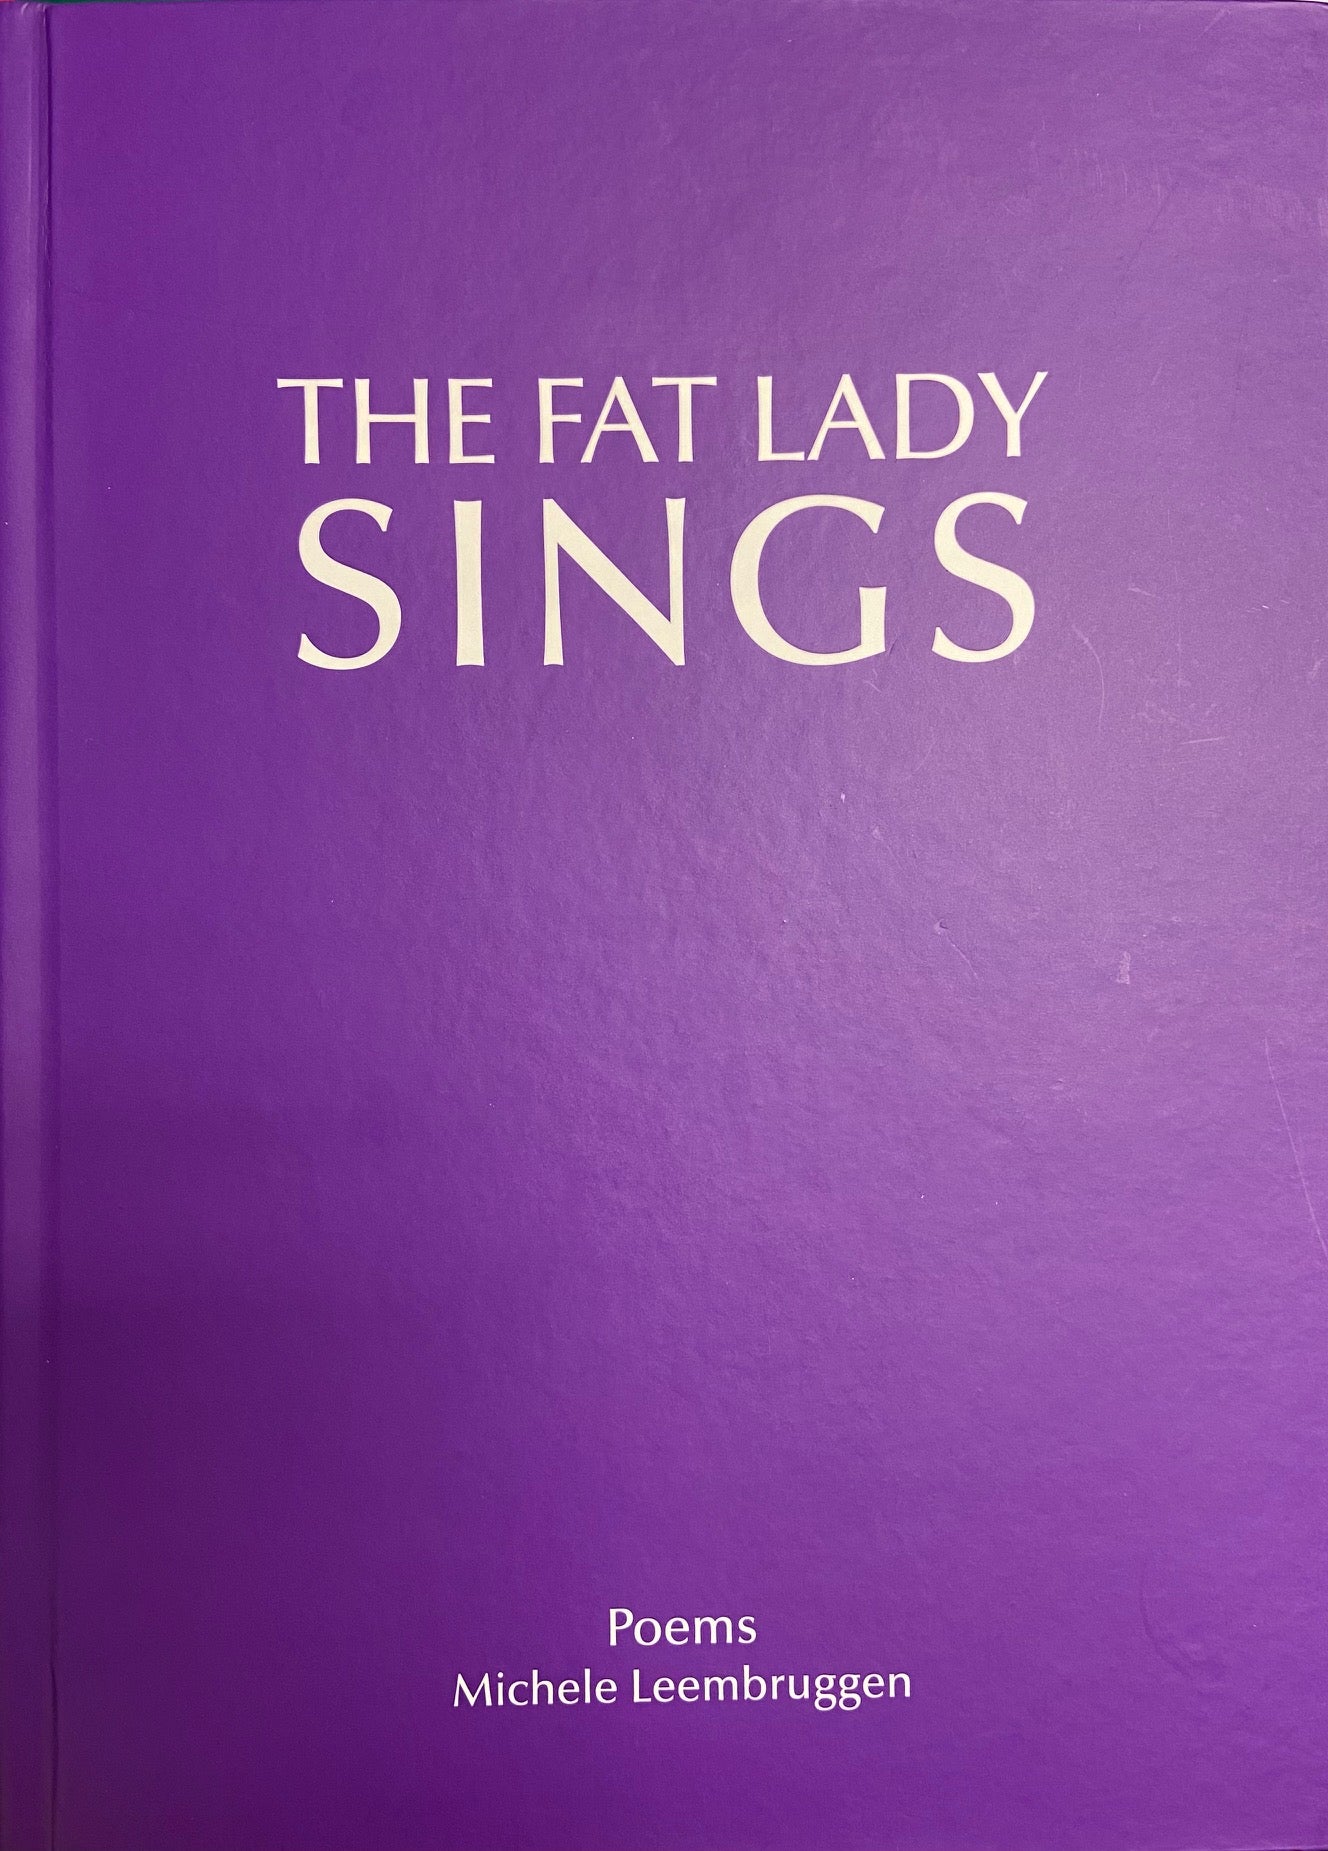 The Fat Lady Sings by Michele Leembruggen